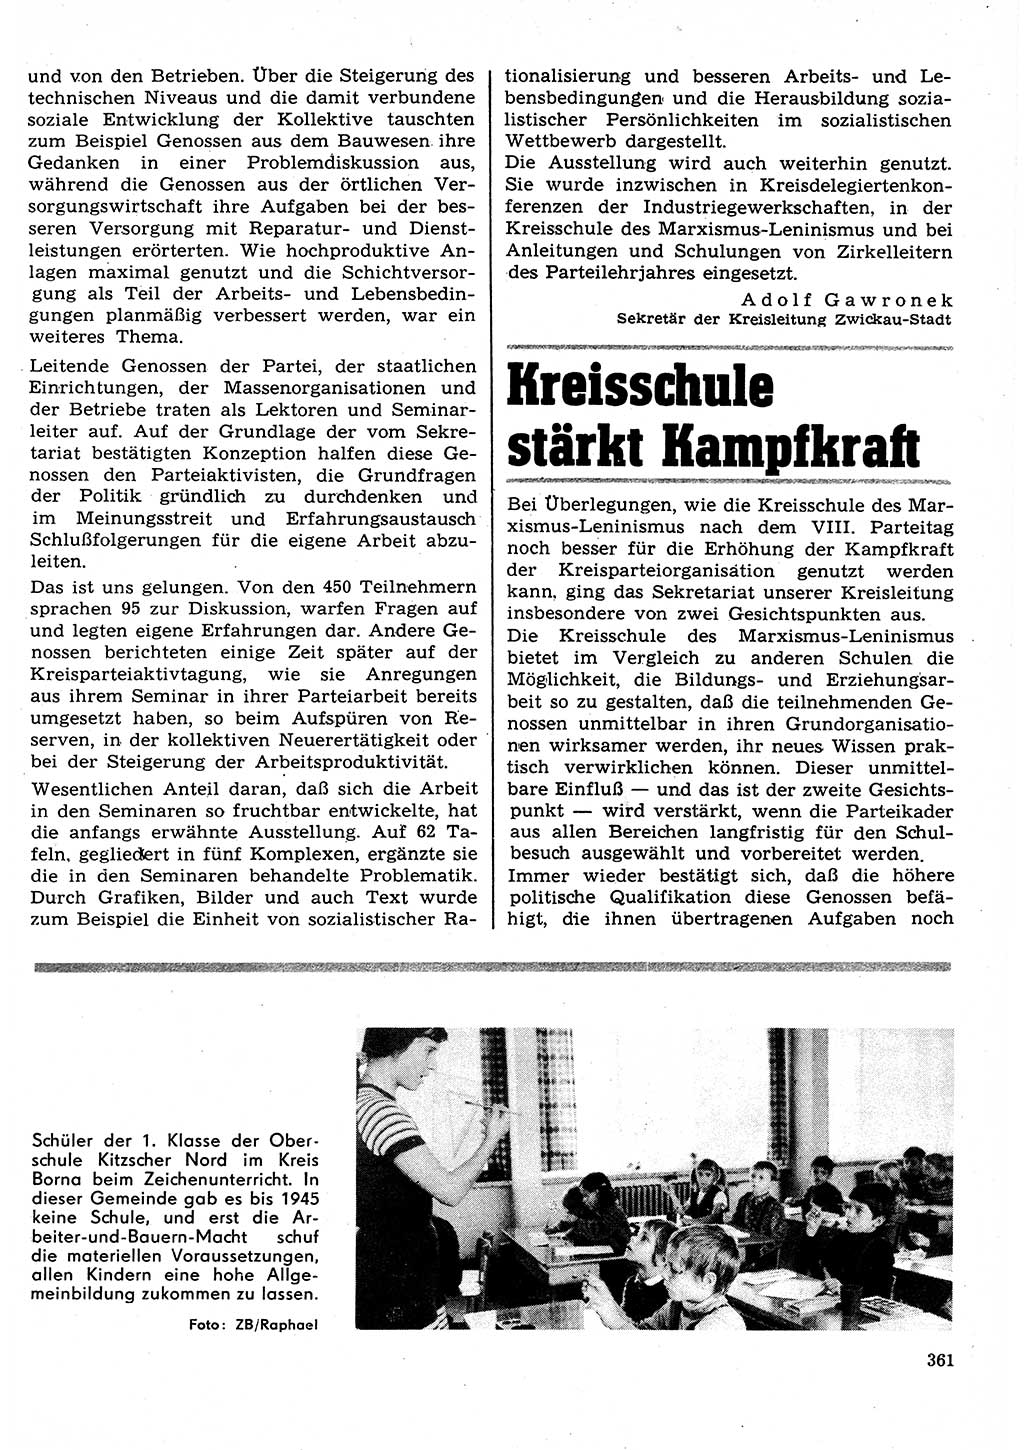 Neuer Weg (NW), Organ des Zentralkomitees (ZK) der SED (Sozialistische Einheitspartei Deutschlands) für Fragen des Parteilebens, 27. Jahrgang [Deutsche Demokratische Republik (DDR)] 1972, Seite 361 (NW ZK SED DDR 1972, S. 361)